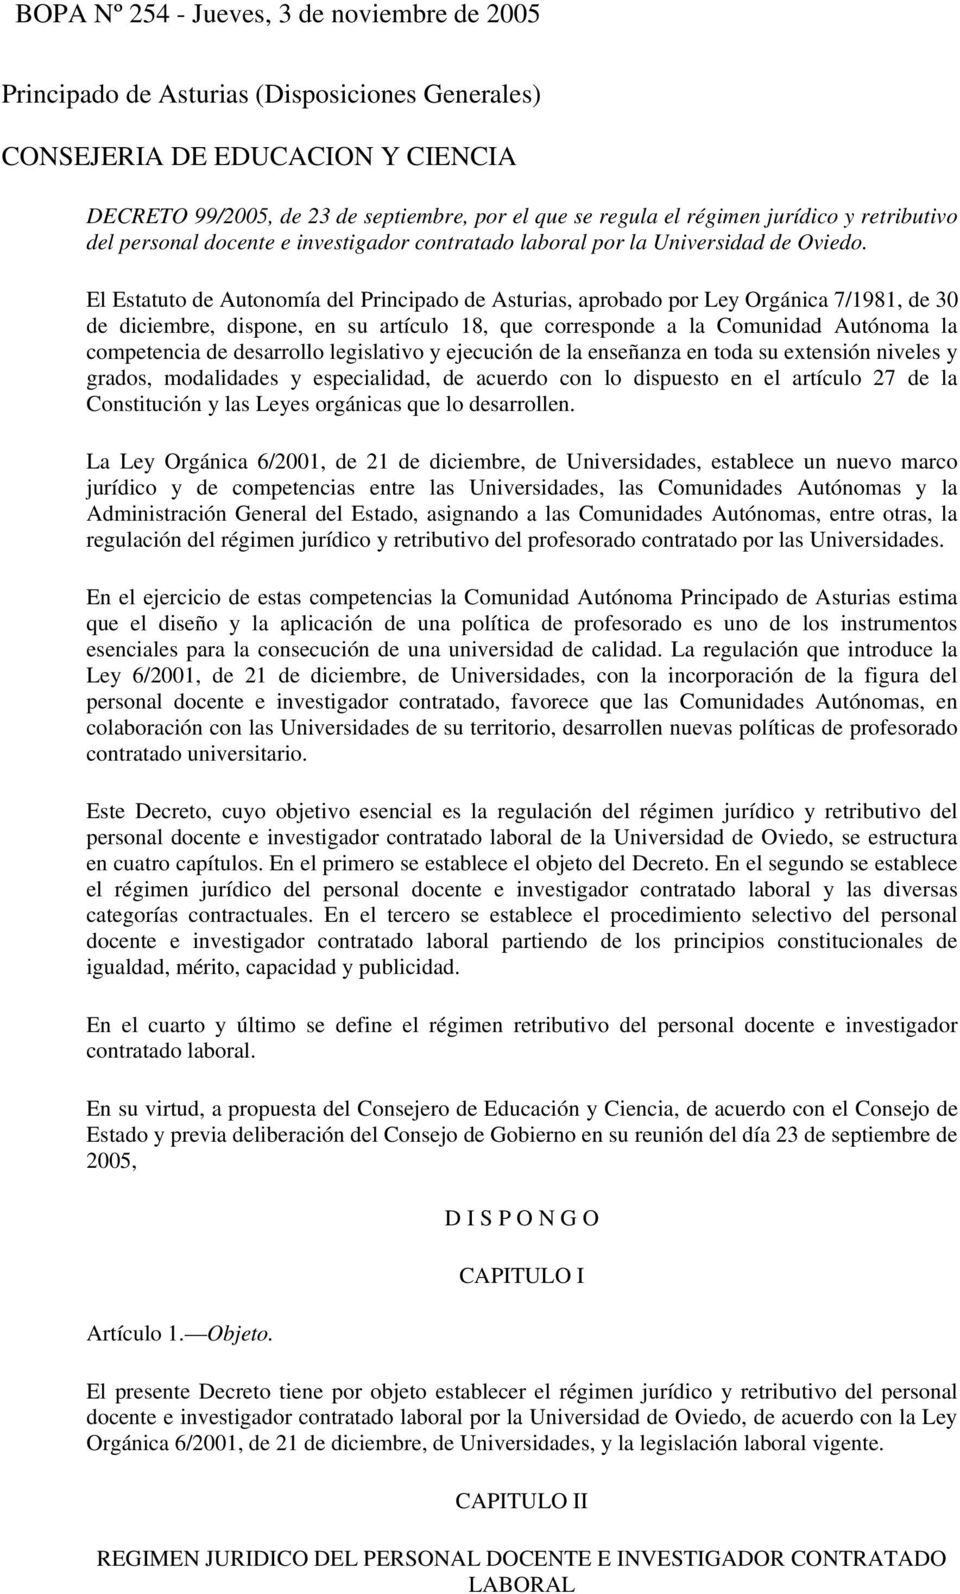 El Estatuto de Autonomía del Principado de Asturias, aprobado por Ley Orgánica 7/1981, de 30 de diciembre, dispone, en su artículo 18, que corresponde a la Comunidad Autónoma la competencia de